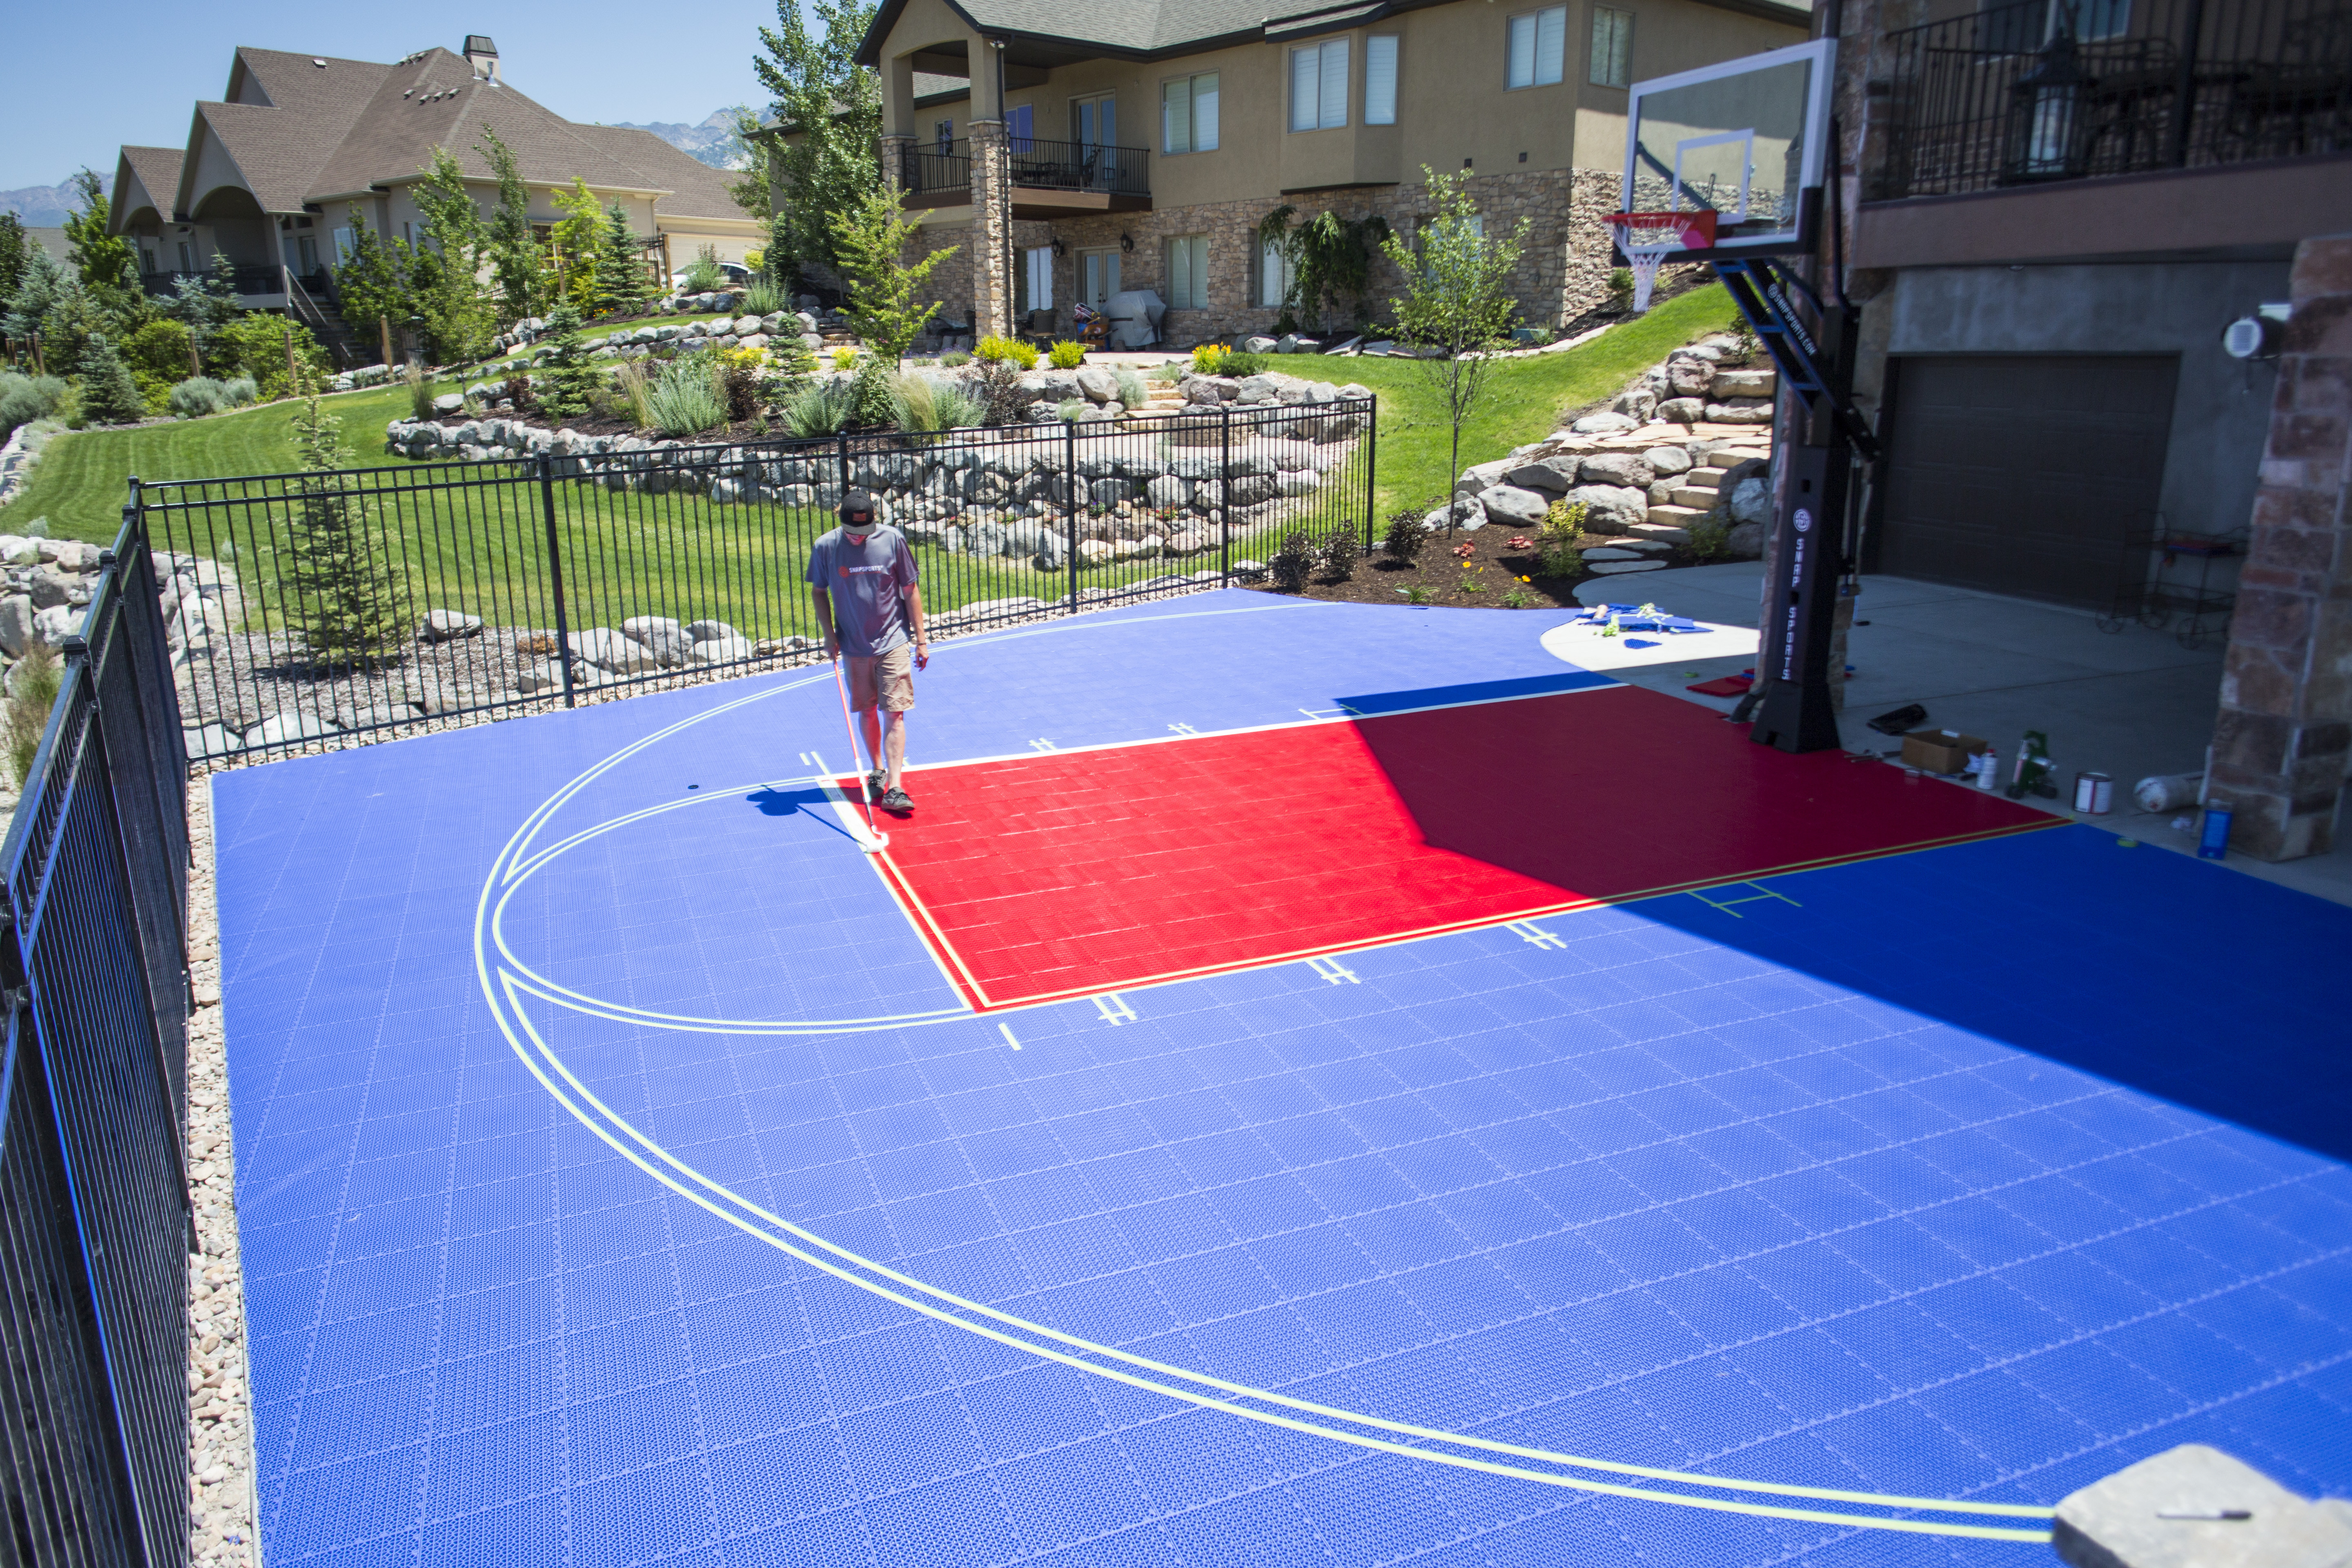 Best ideas about Backyard Basketball Court . Save or Pin SnapSports backyard basketball court Now.